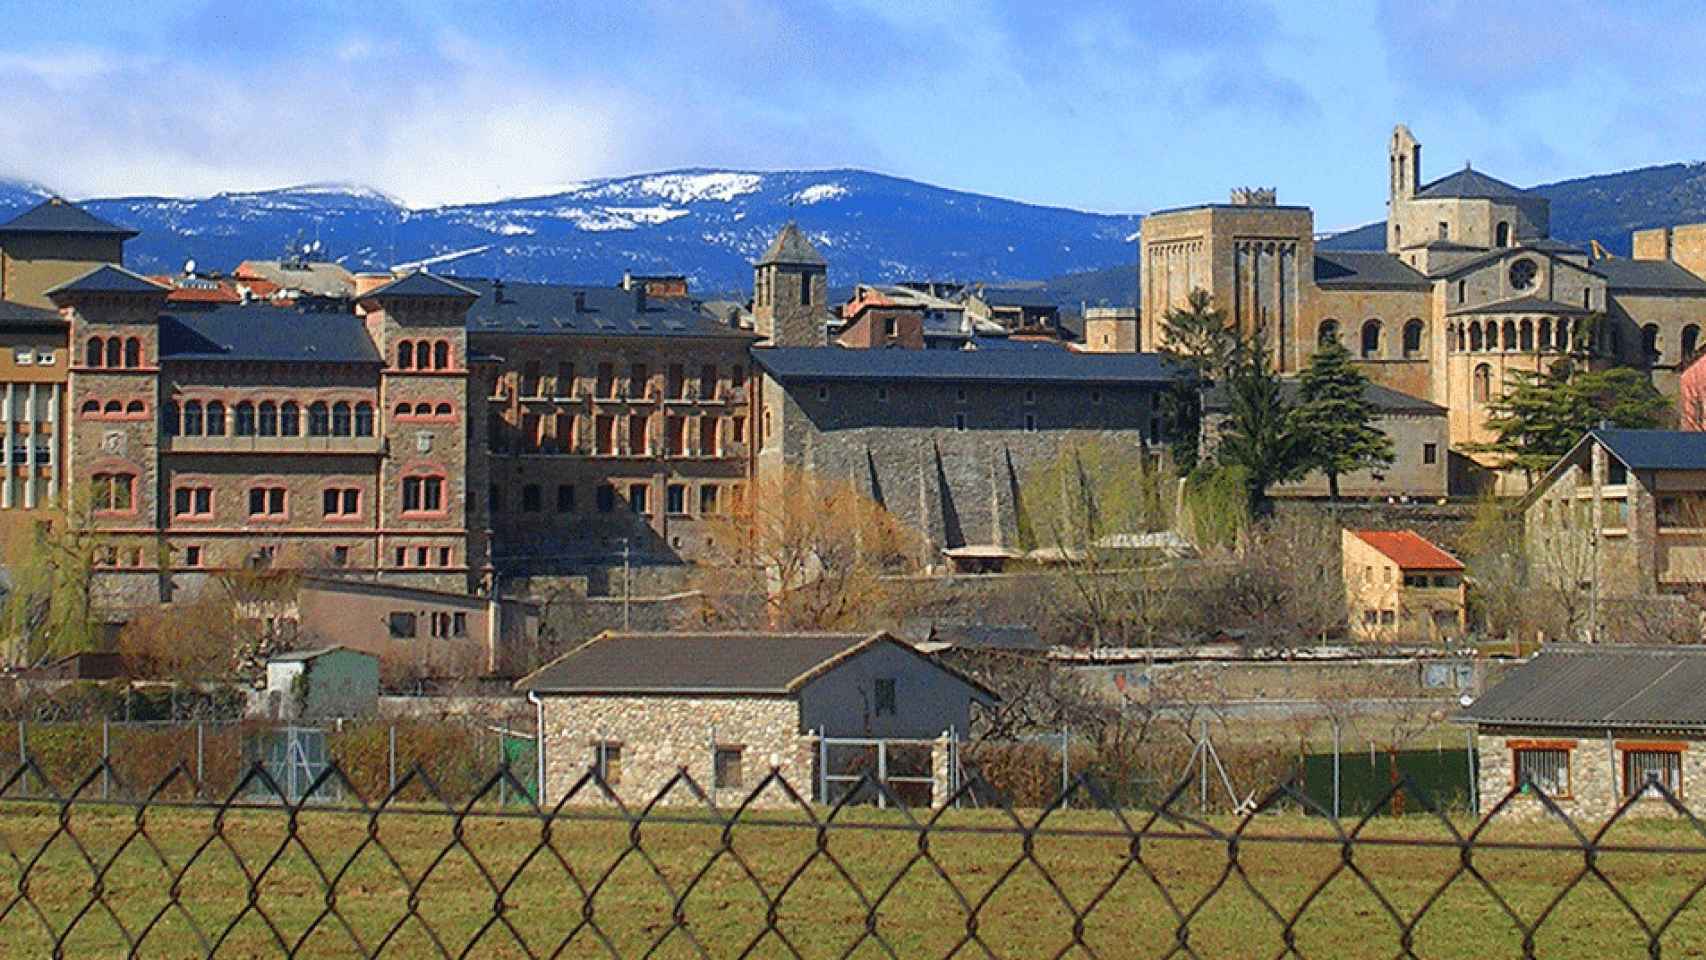 El municipio de La Seu d'Urgell, en el Pirineo